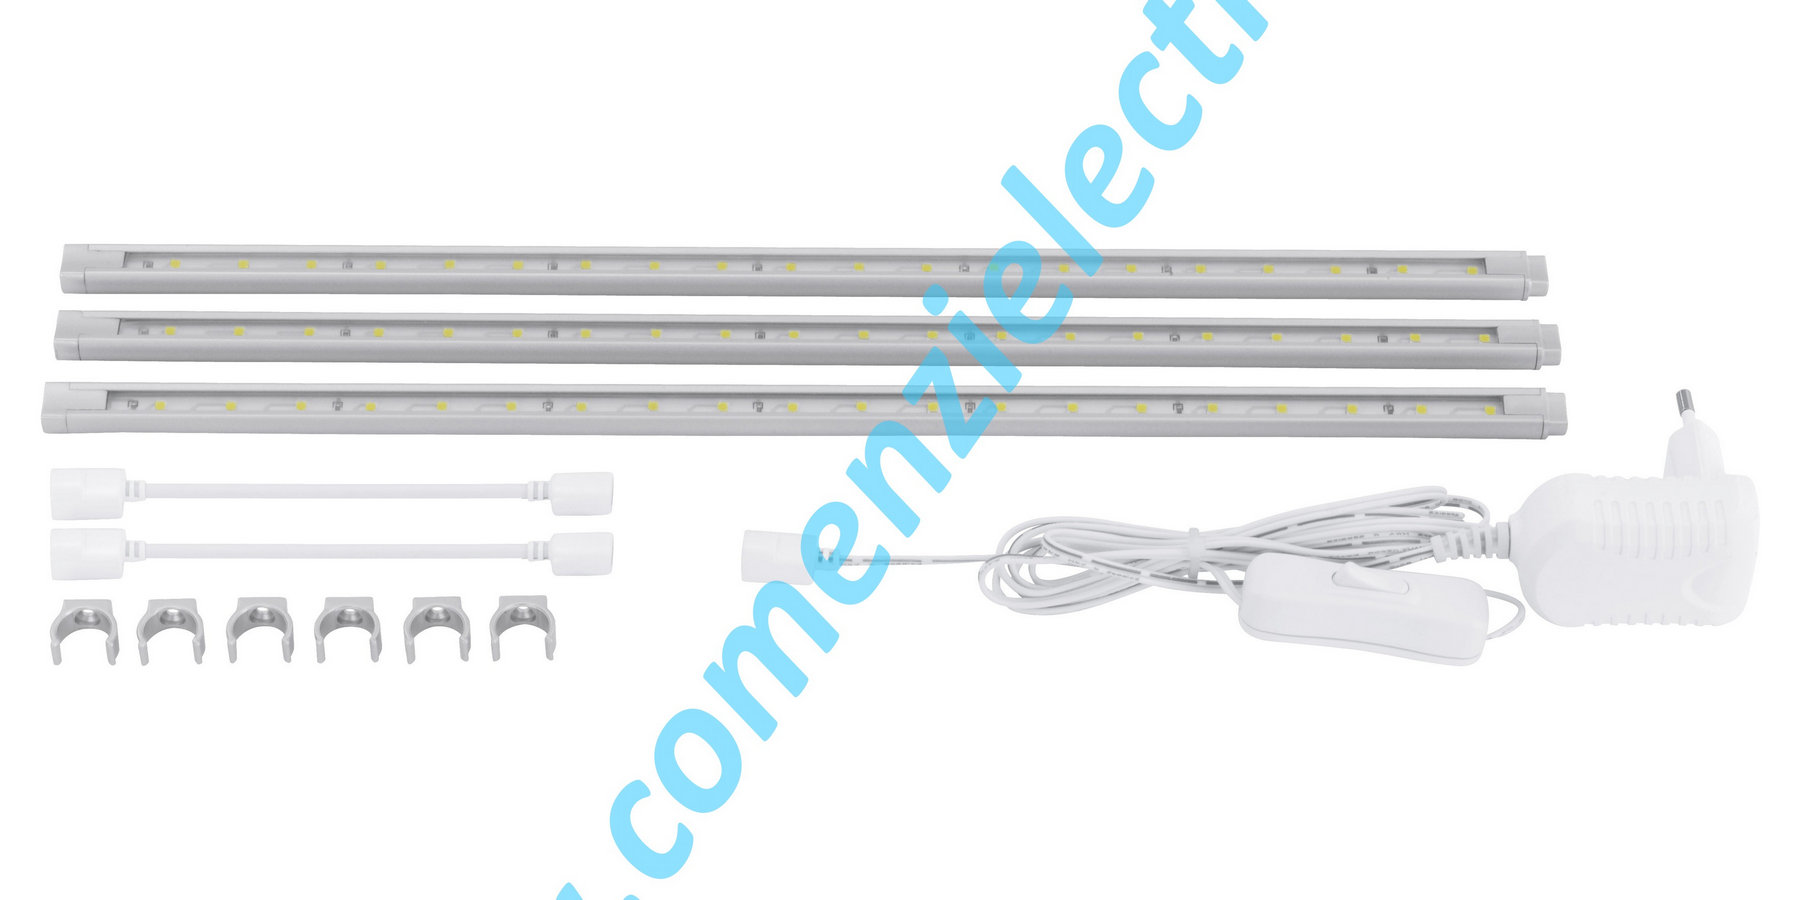 Bagheta LED (20) 3x1.6W Corp de iluminat